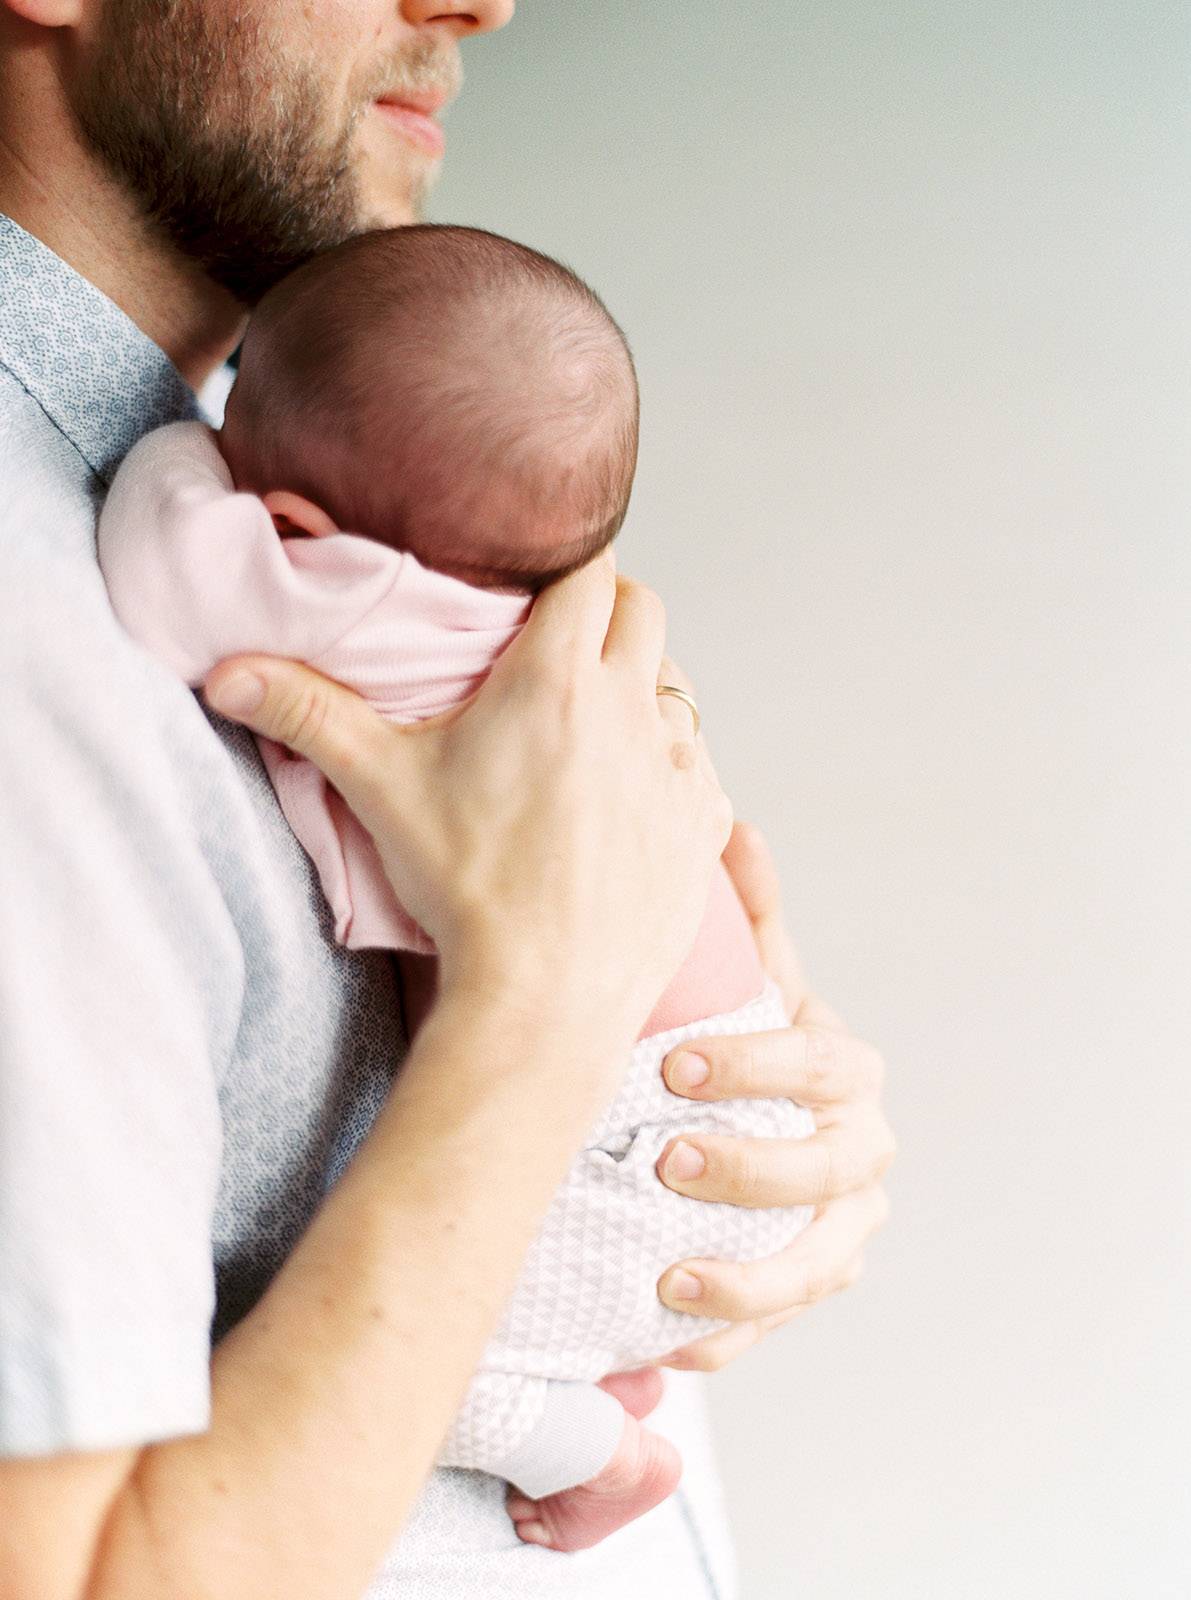 Как держать на руках новорожденного ребенка